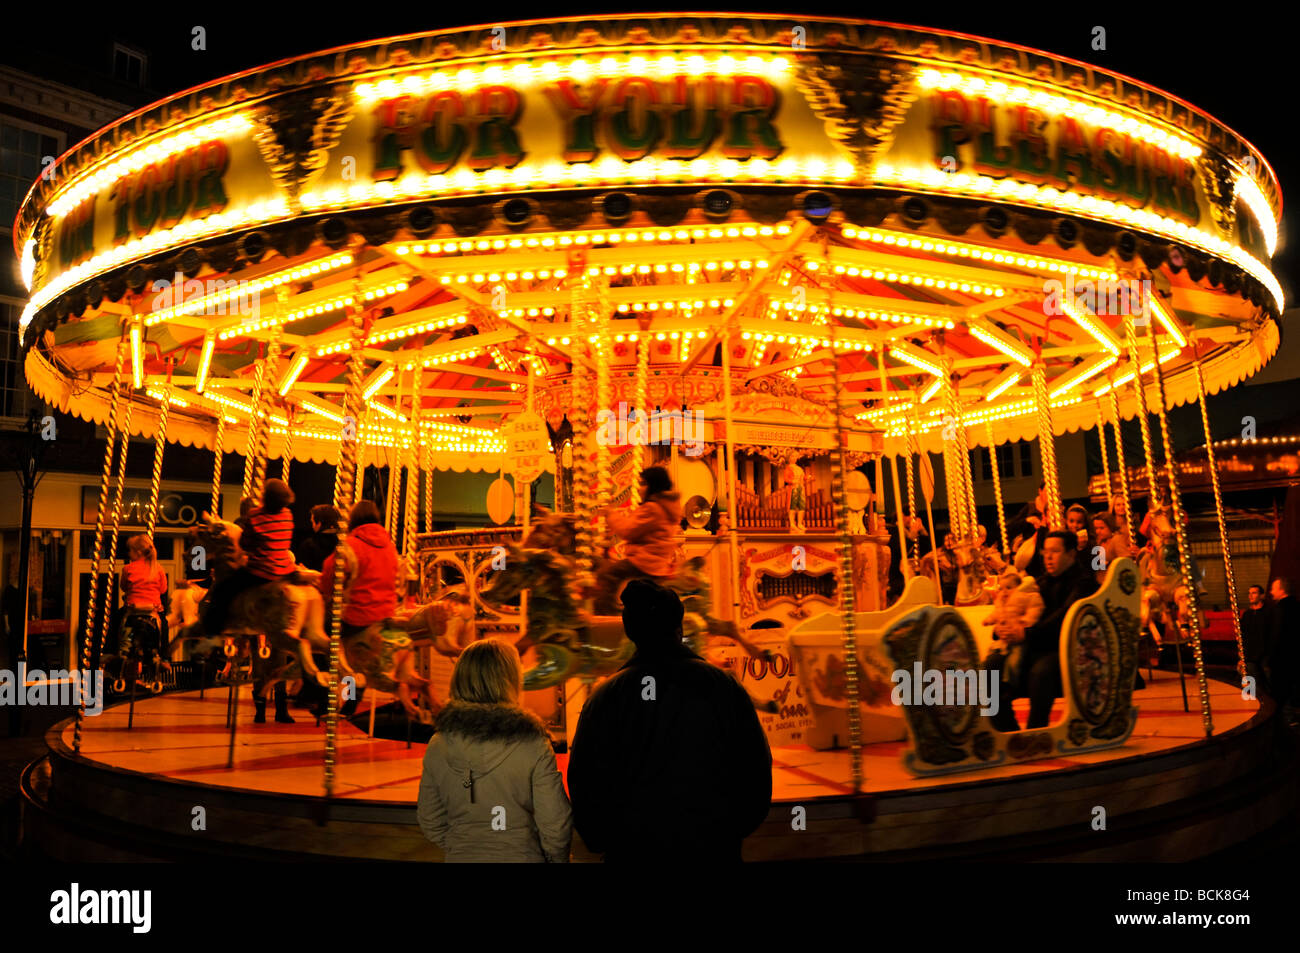 Illuminated carousel fairground ride in Abingdon Michaelmas Fair England Stock Photo